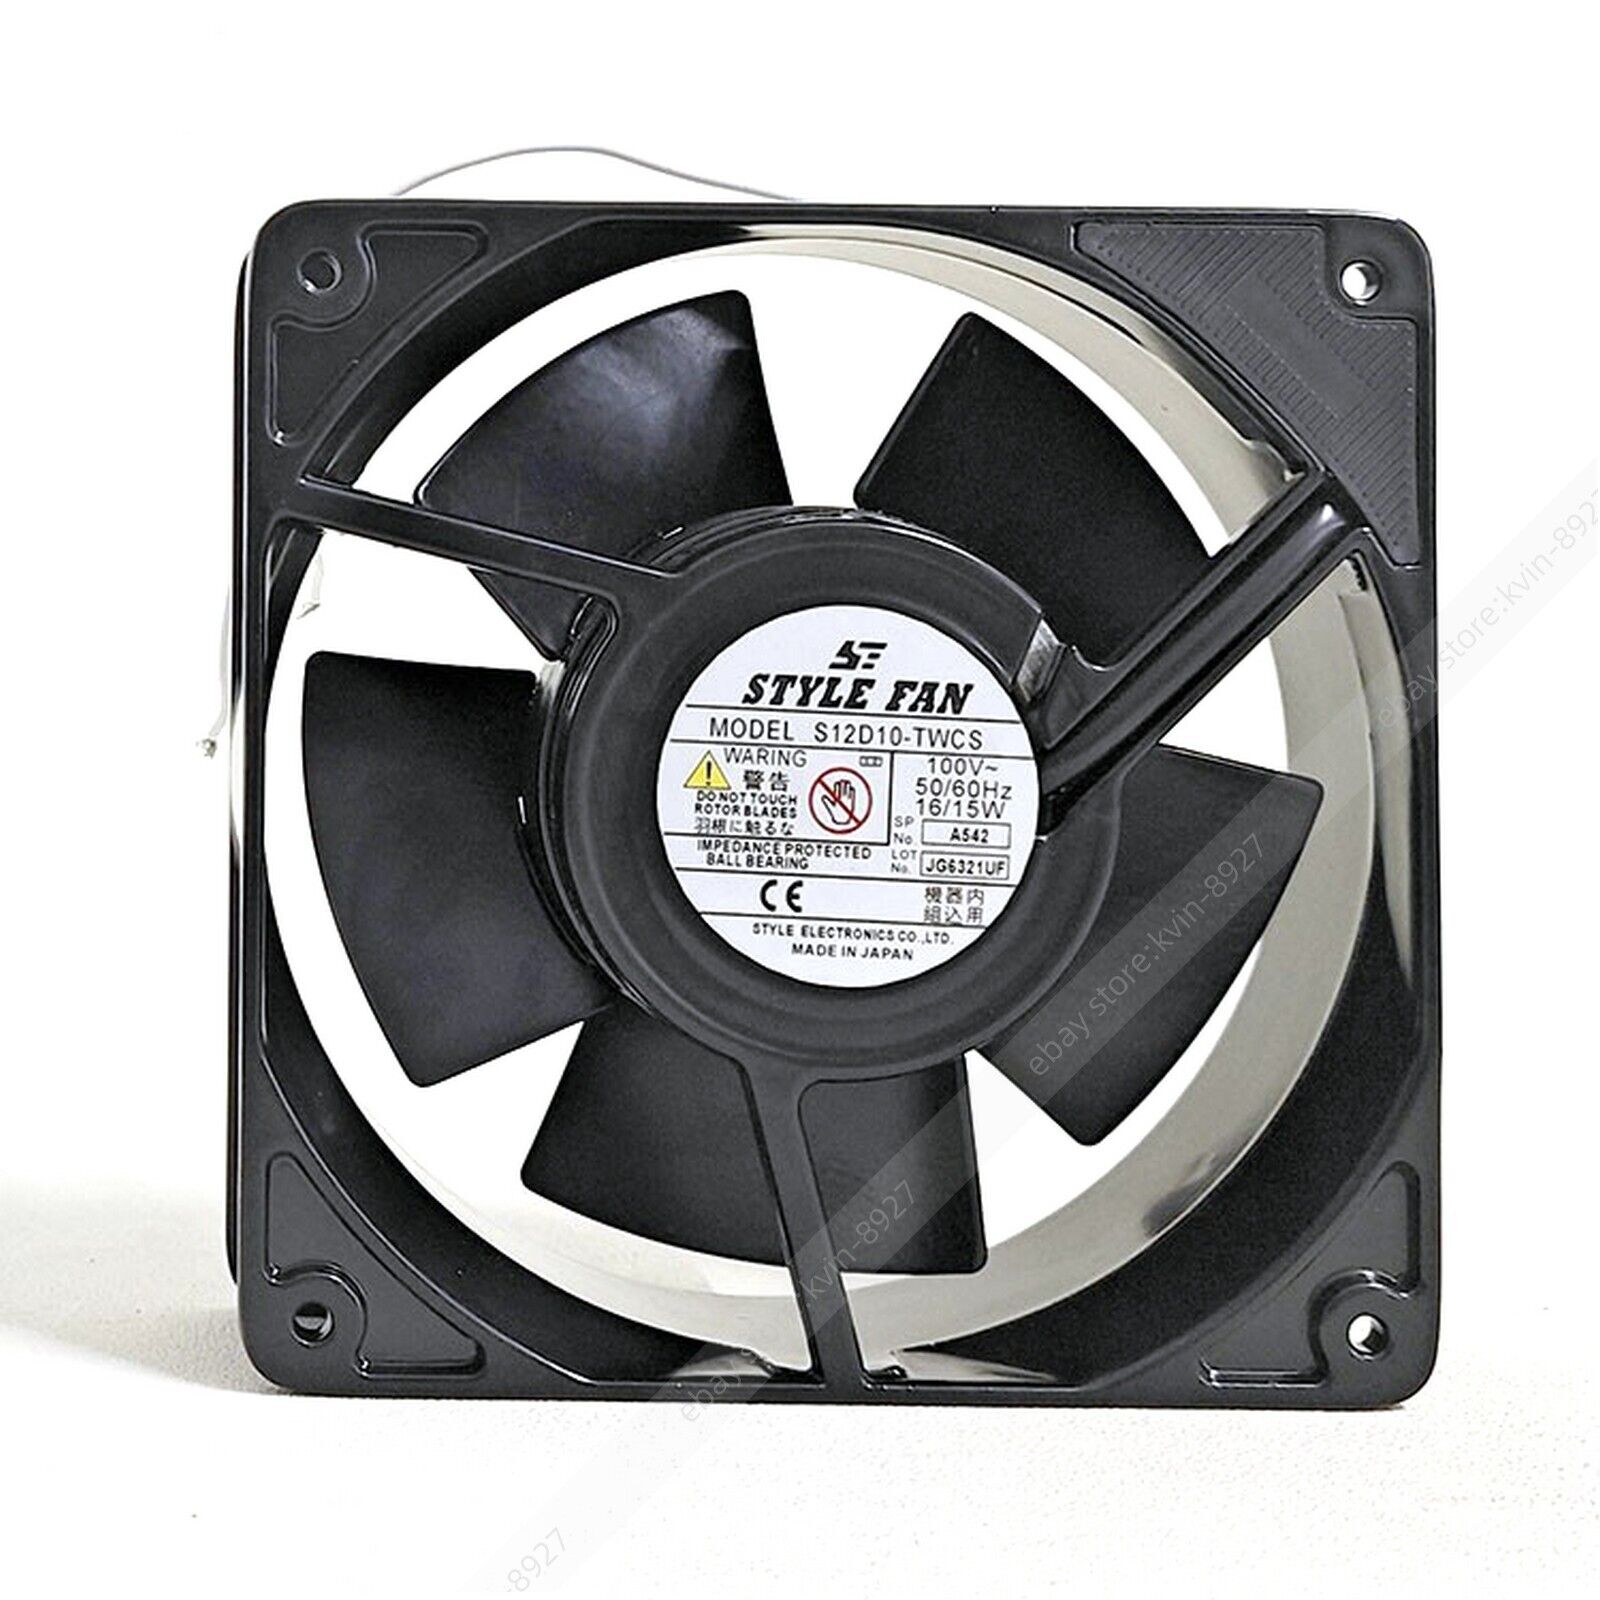 1PC STYLE FAN S12D10-TWCS 100V 16/15W 12CM 2-Wire Cooling Fan